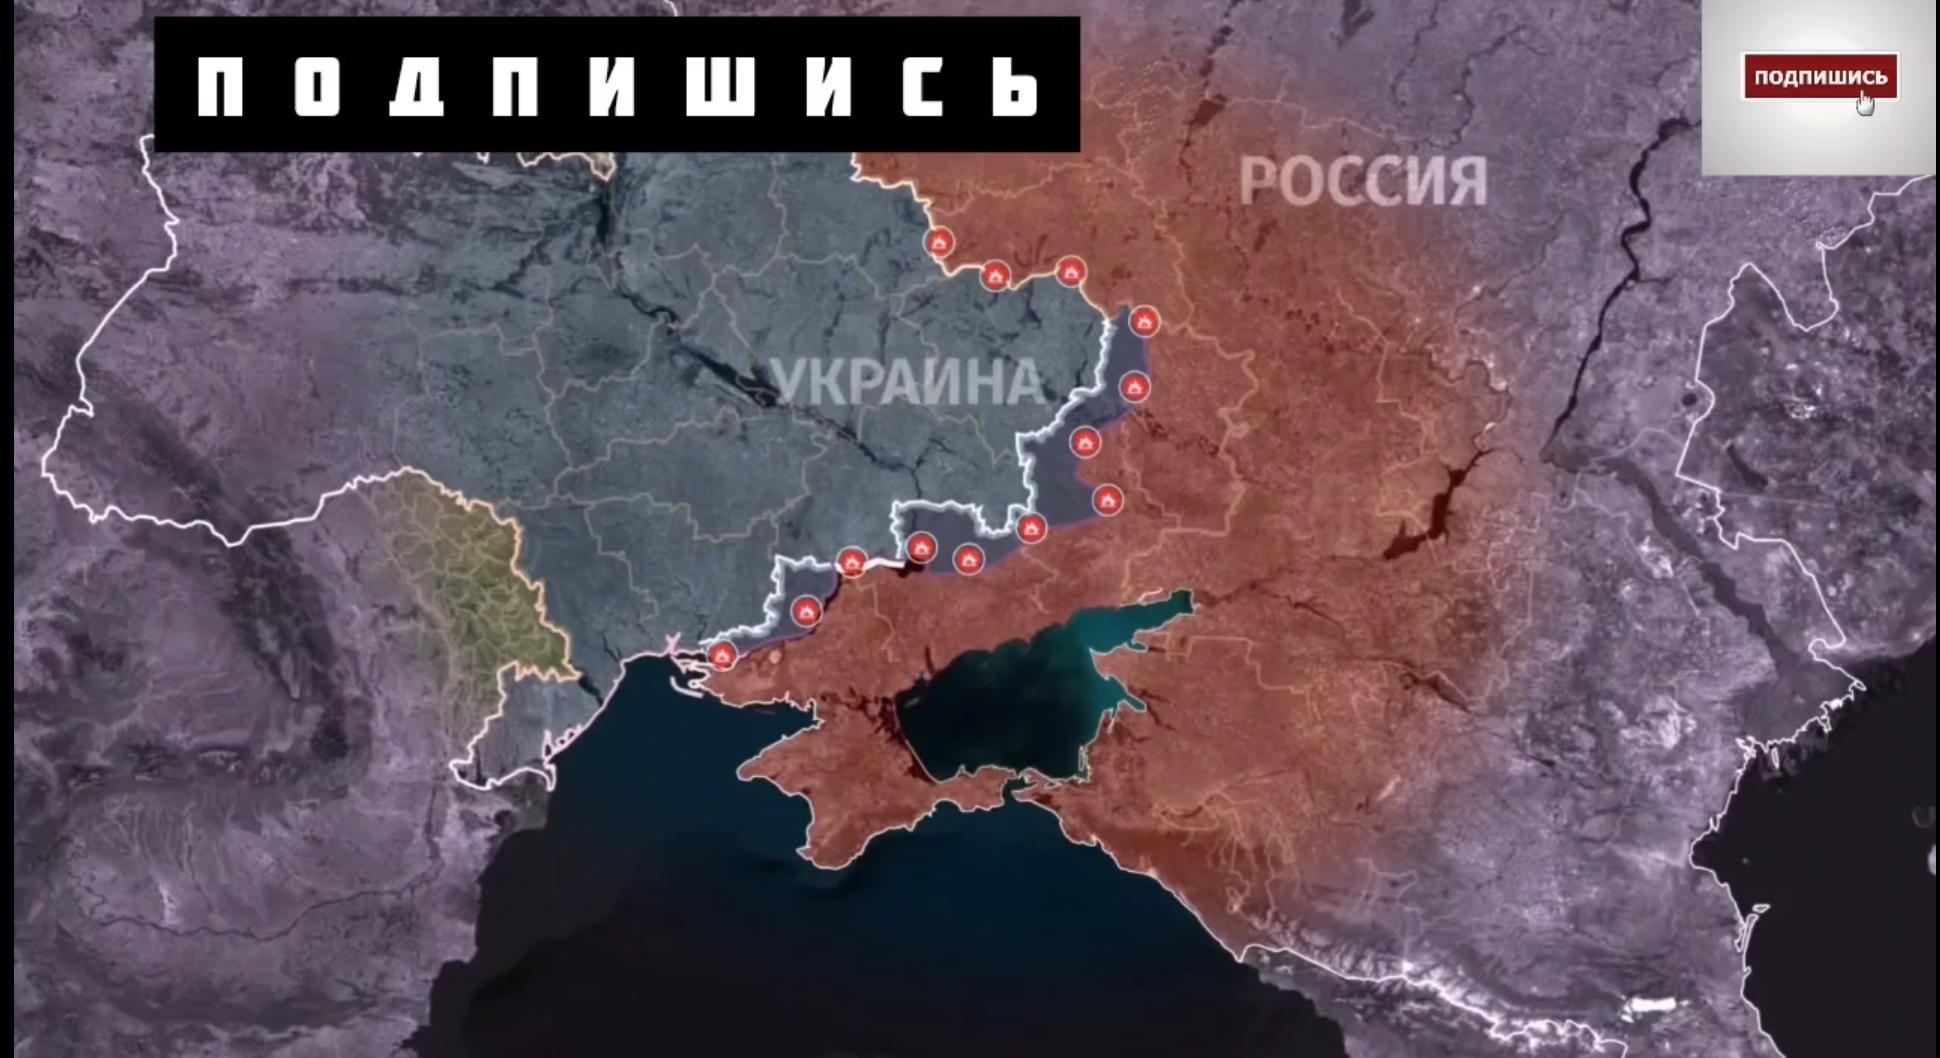 7 января 2023 г. Карта наступления на Украину. Российские военные на Украине. Карта Донецкой народной Республики 2023 год. Российско-украинский конфликт.